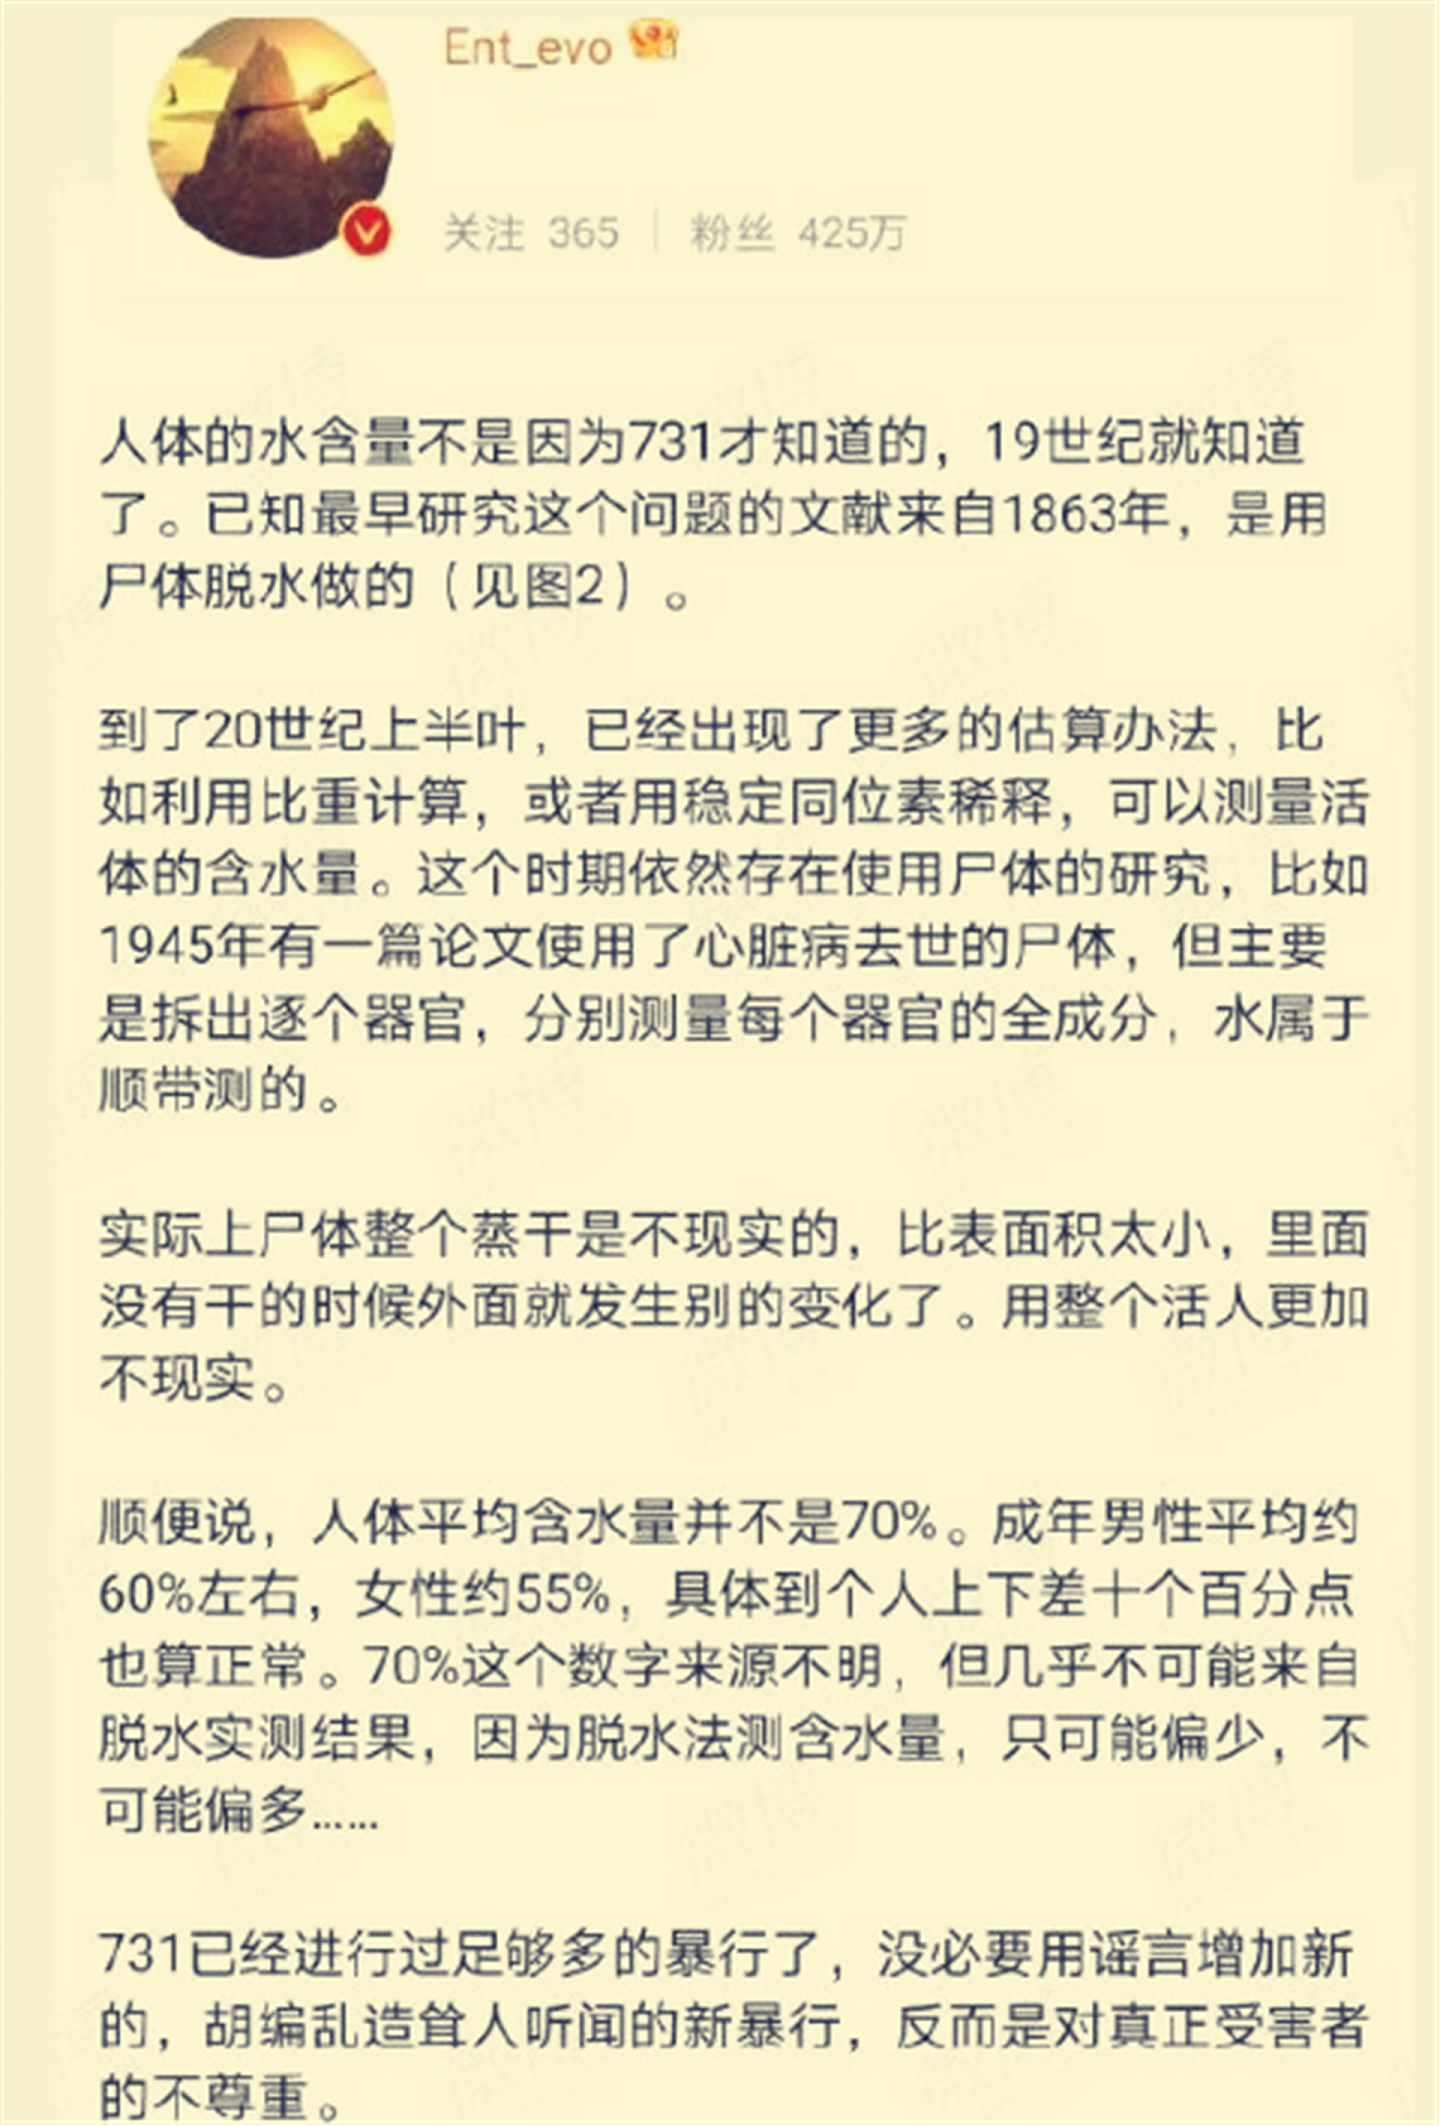 微博大v称“没必要用谣言为731部队增加新的暴行”，引发中国网友愤怒。（微博@Ent_evo）